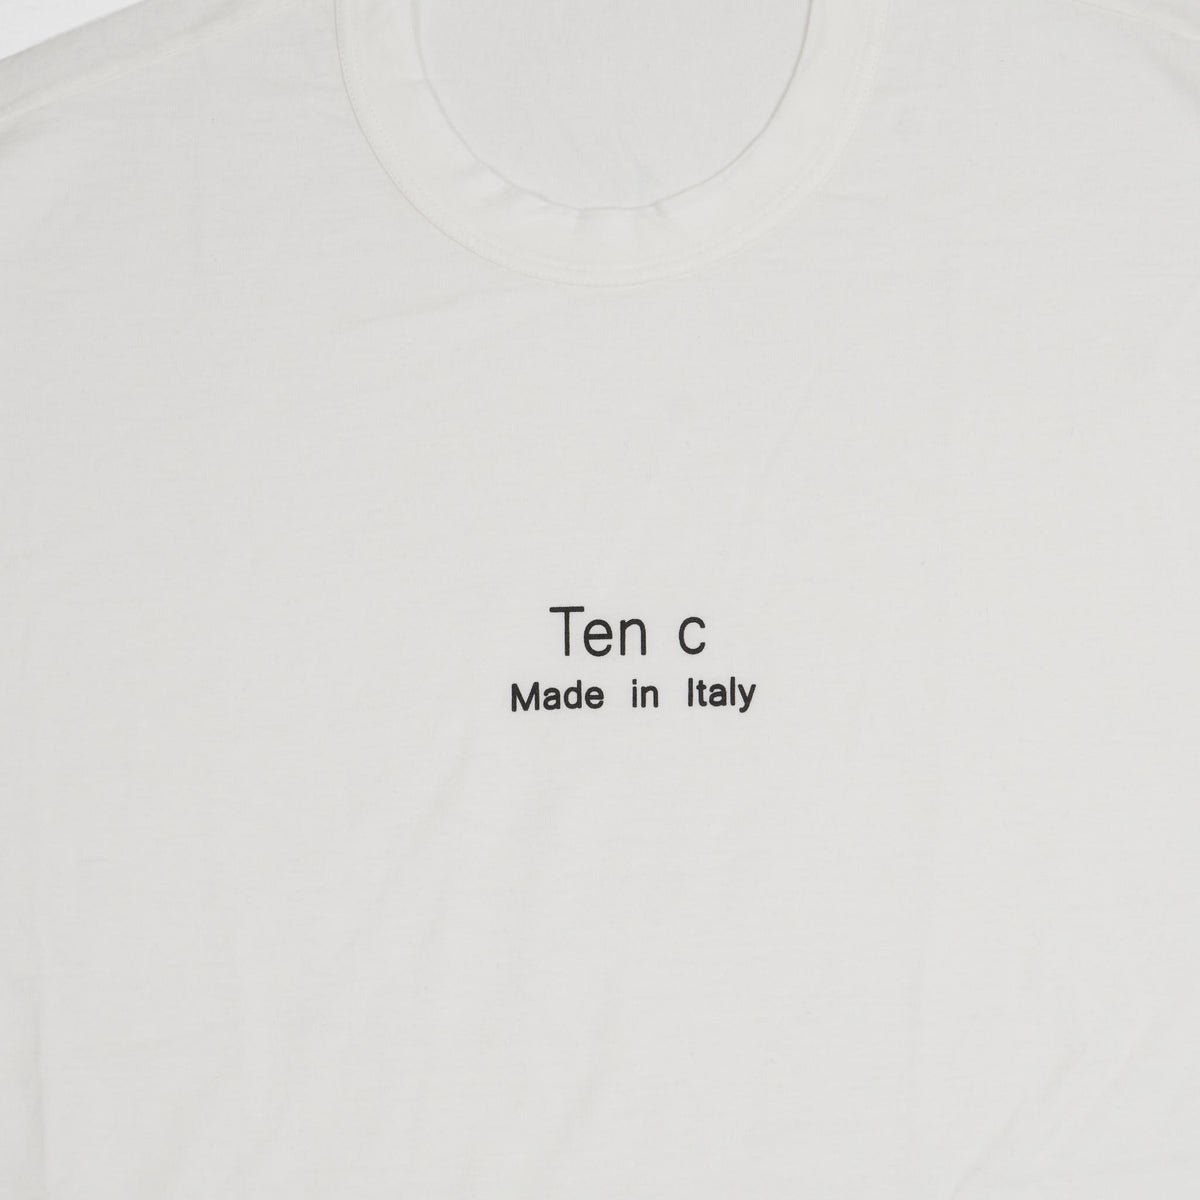 Ten c Basic Printed Crew Neck T-Shirt